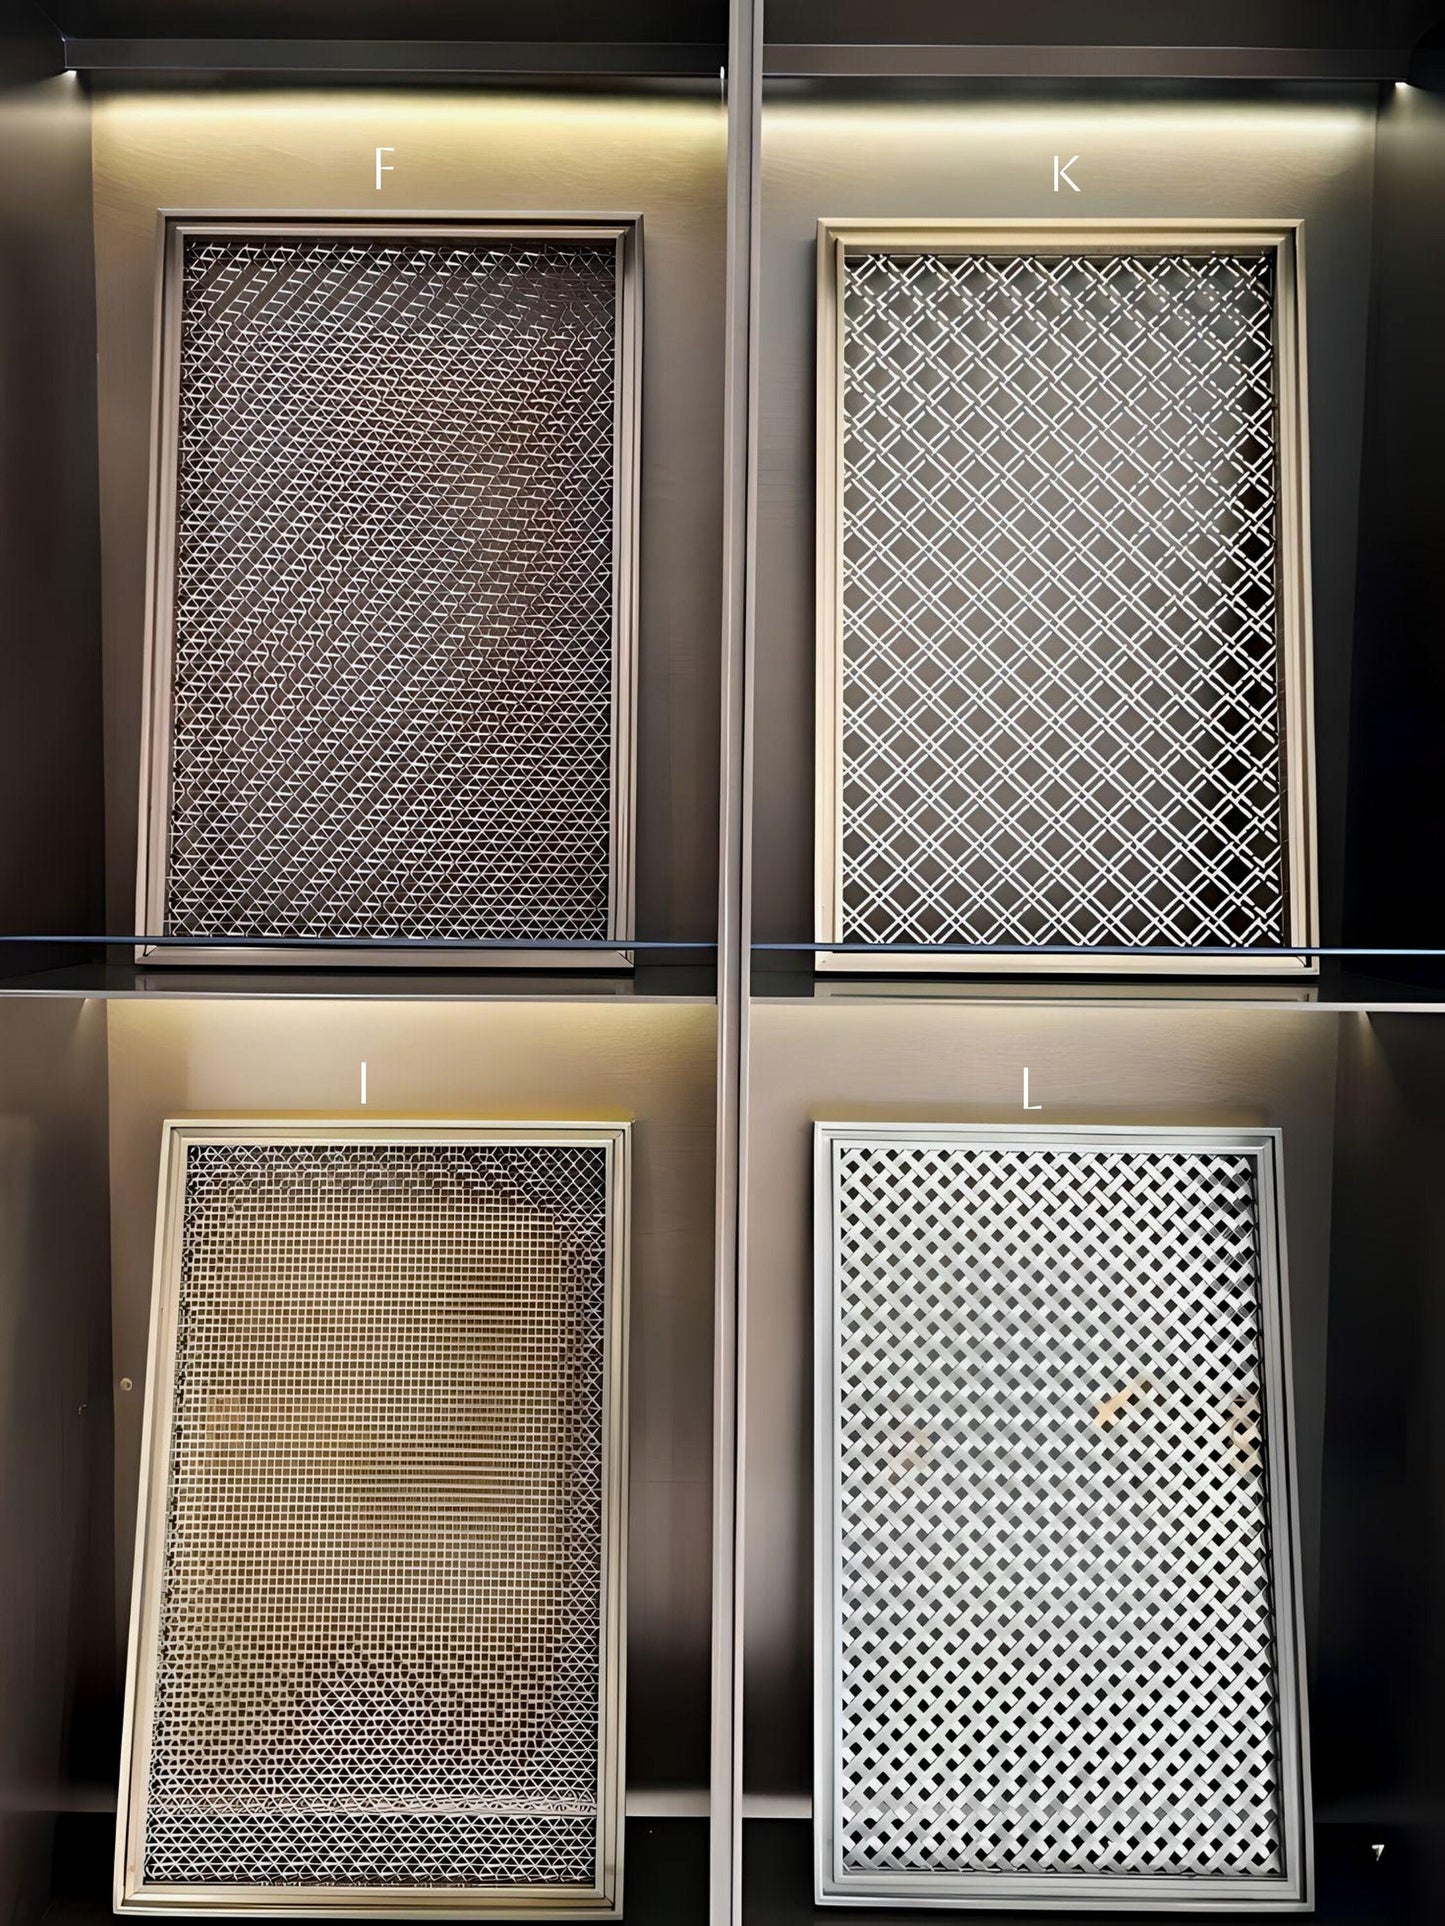 Sample Pack: Stainless Steel Mesh Panels - Modern Design